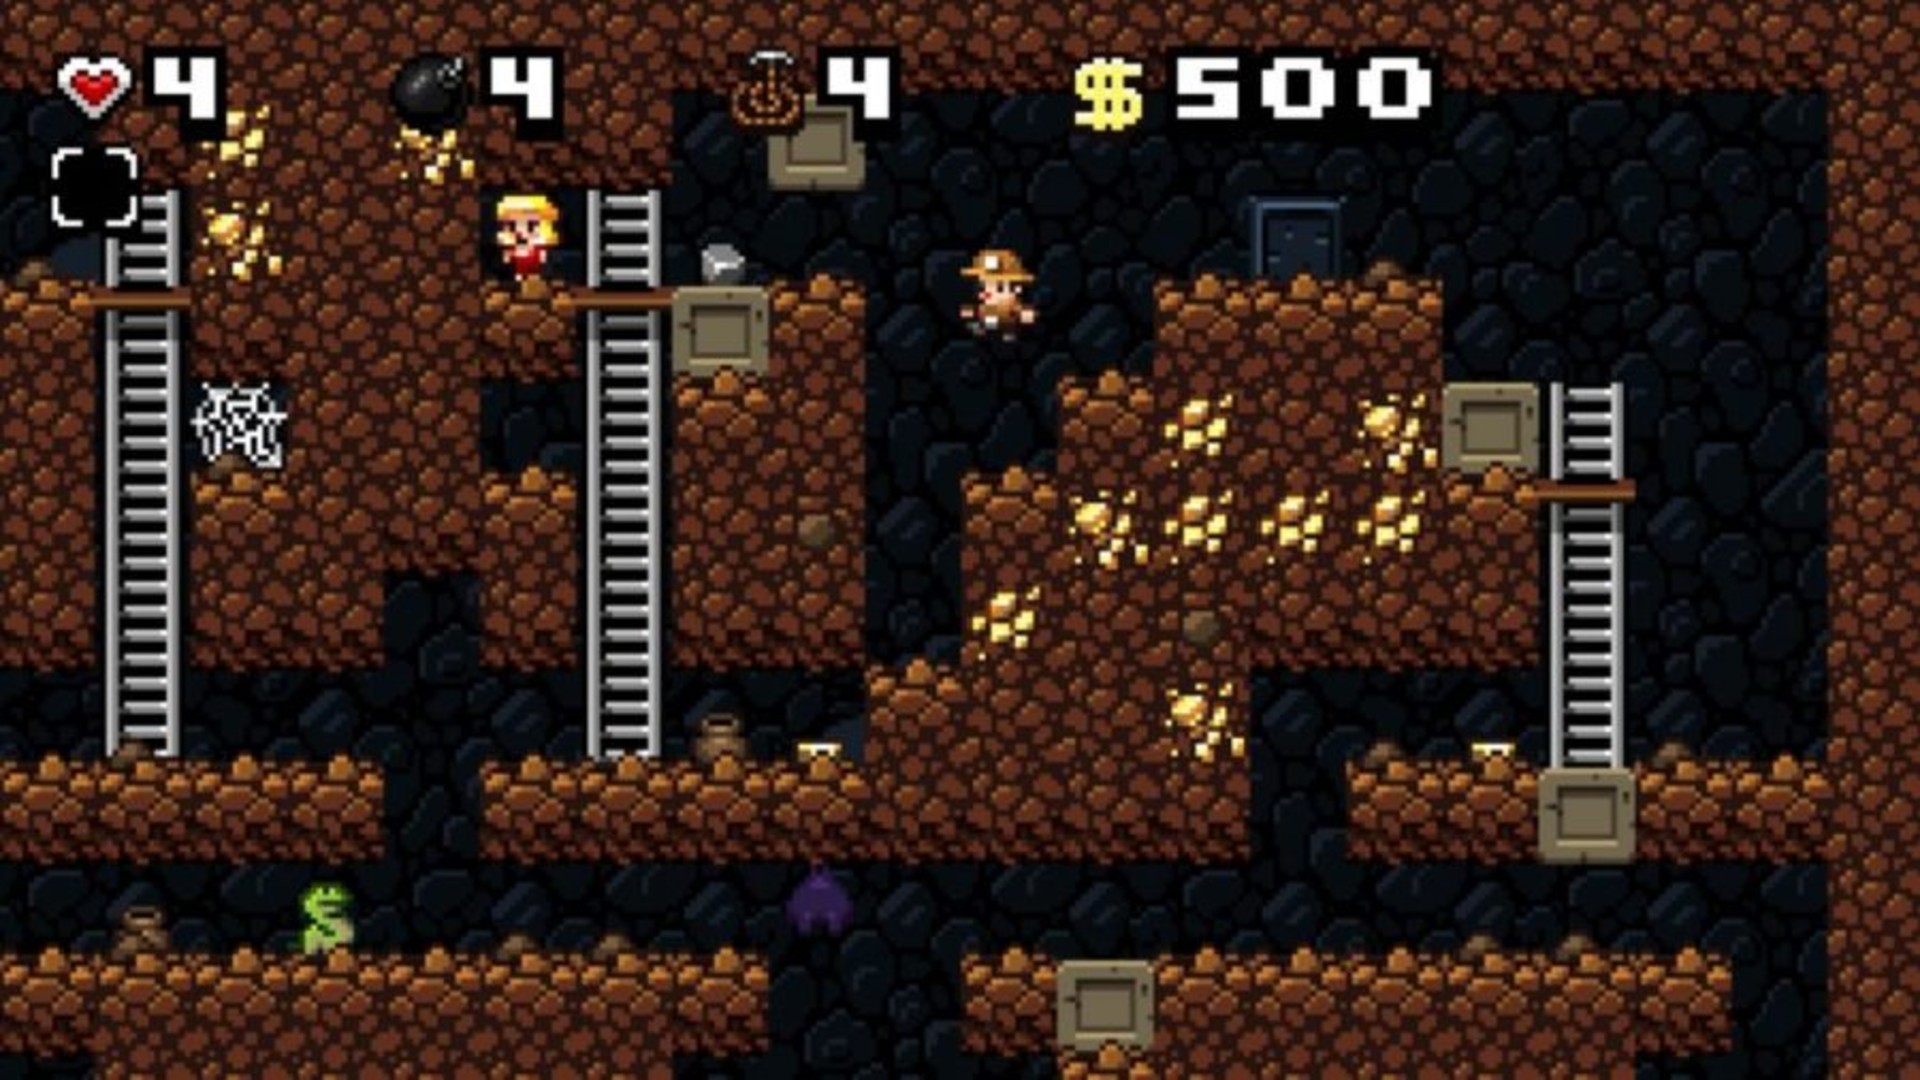 Najlepšie bezplatné počítačové hry: Spelunky Classic. Obrázok zobrazuje pixelované jaskyne, do ktorých sa ponoríte v hre